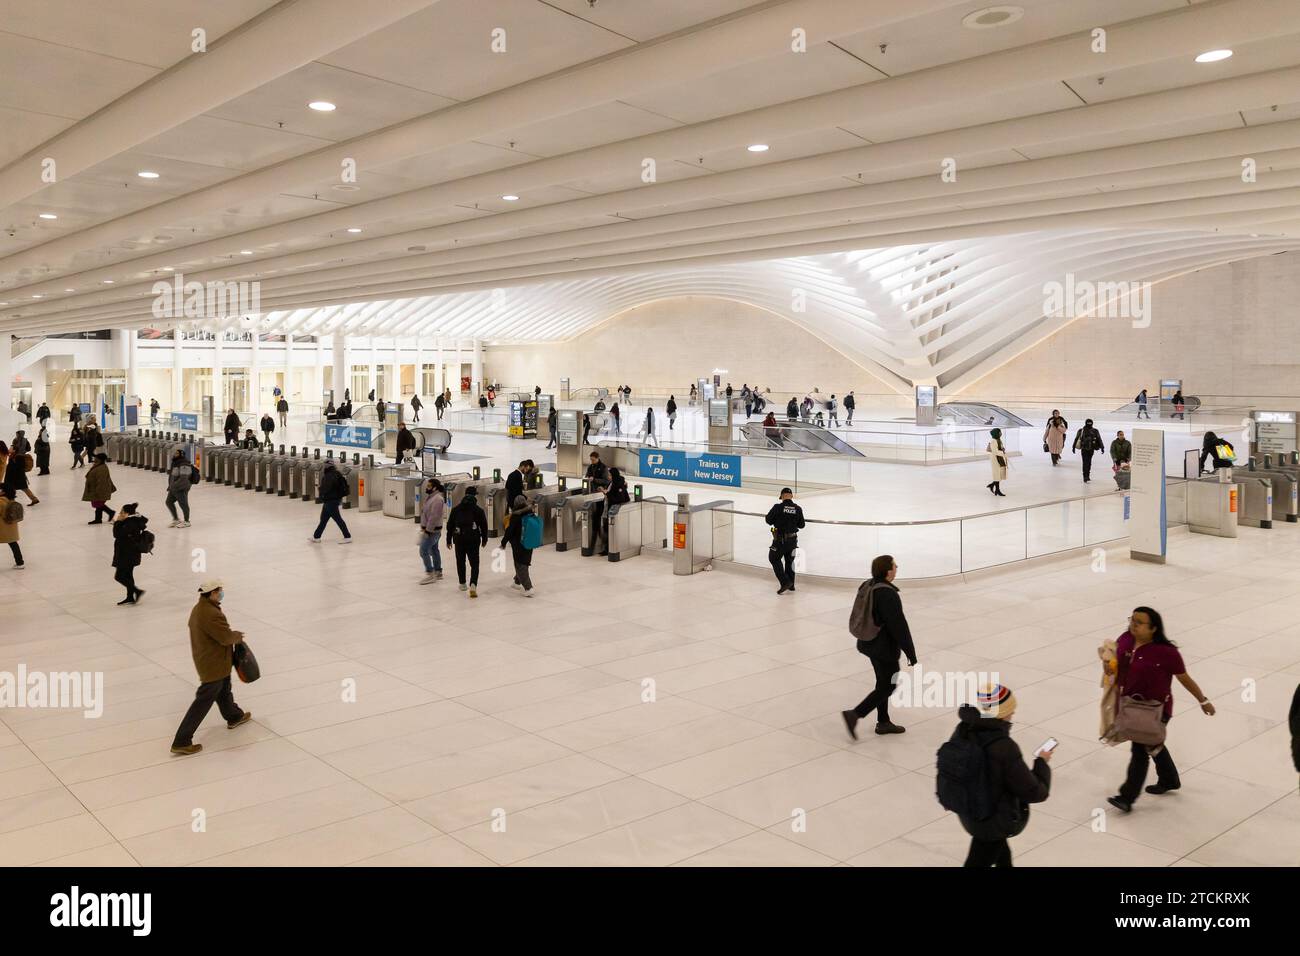 Le terminal des trains PATH qui circule entre le New Jersey et New York au sein de l'Oculus, le centre commercial Westfield World Trade Center. Banque D'Images